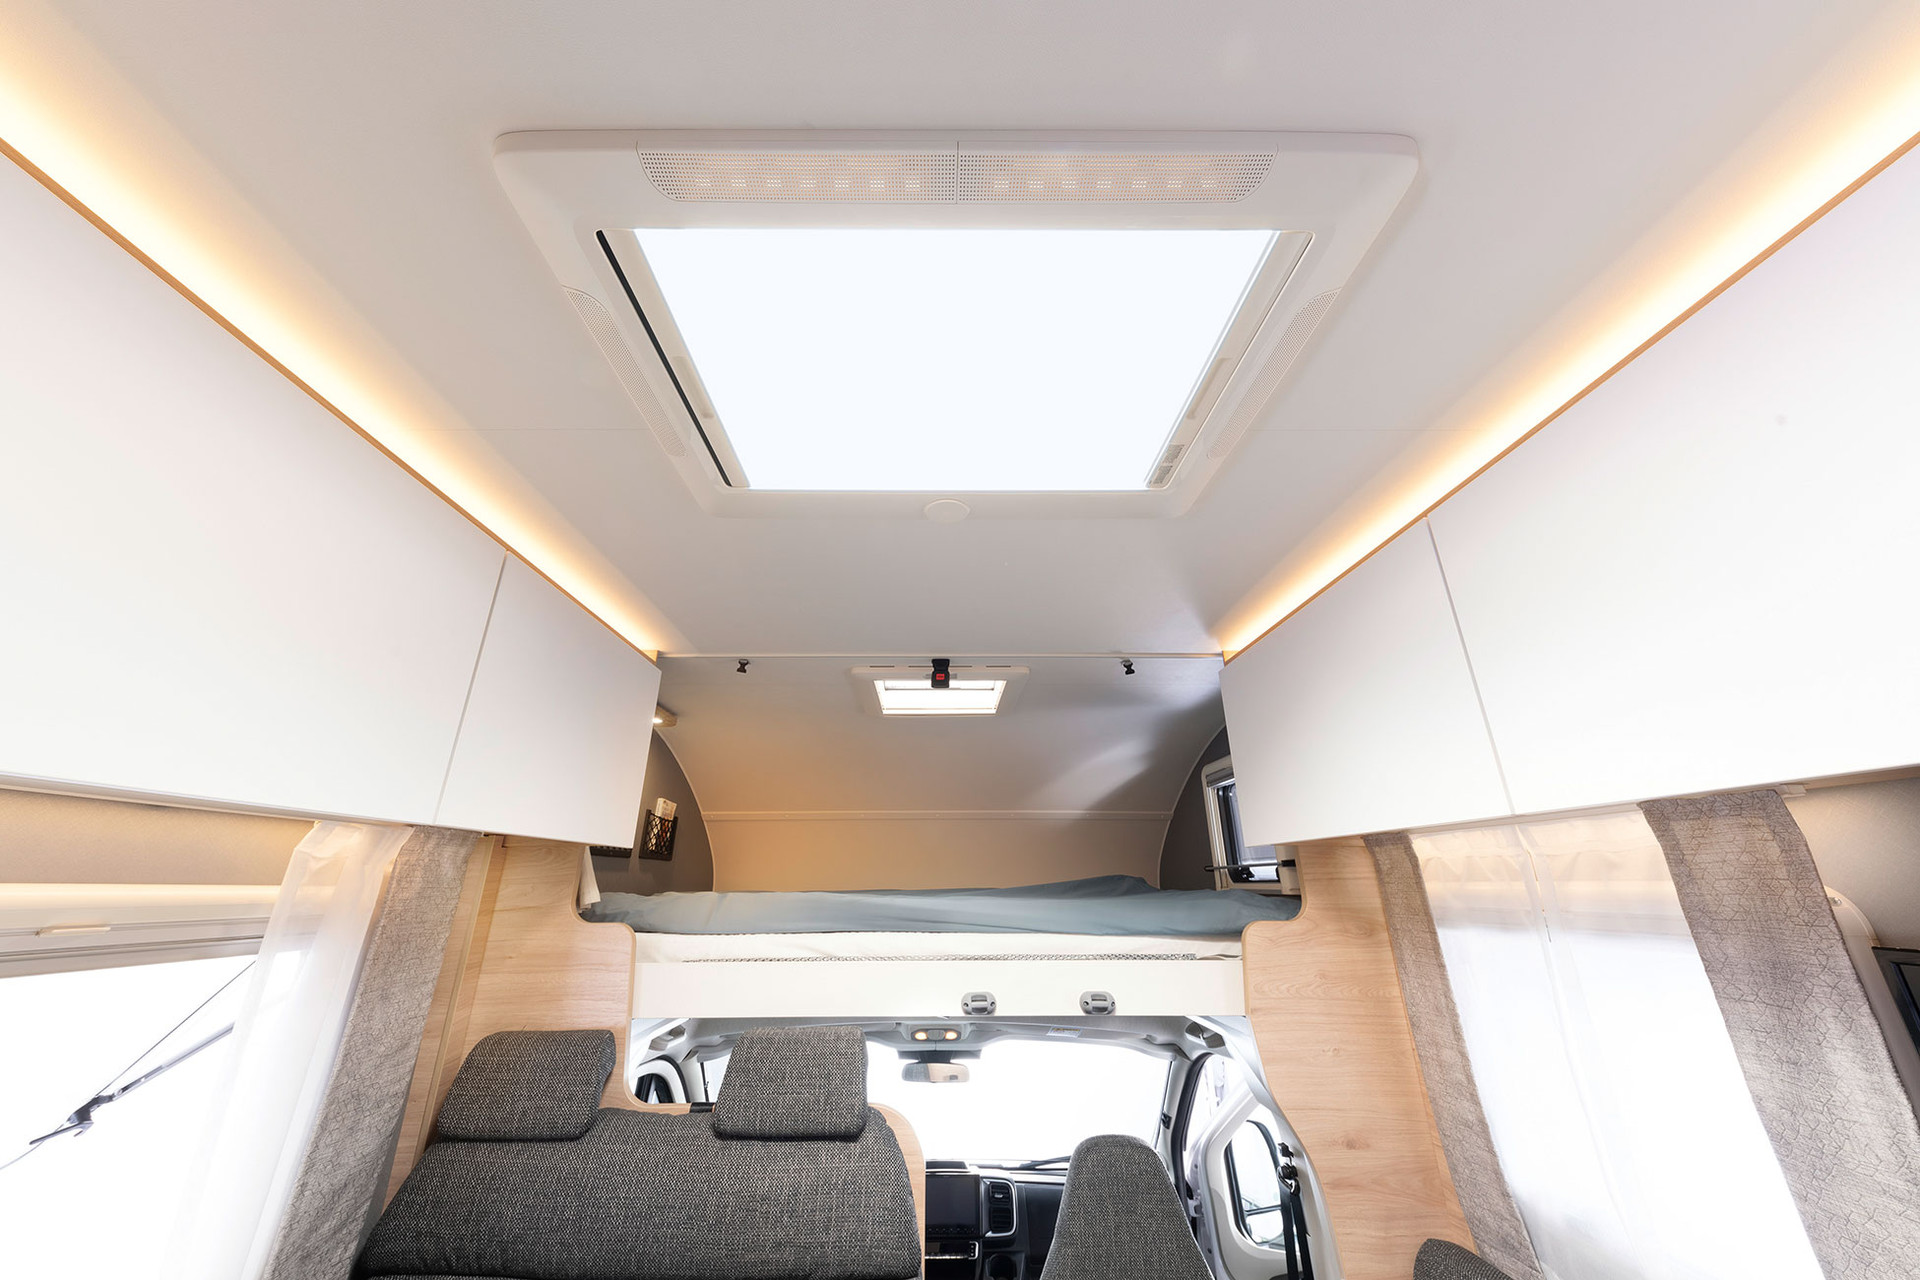 Det stora panoramatakfönstret ovanför sittgruppen ger ljus och rymd i fordonet.